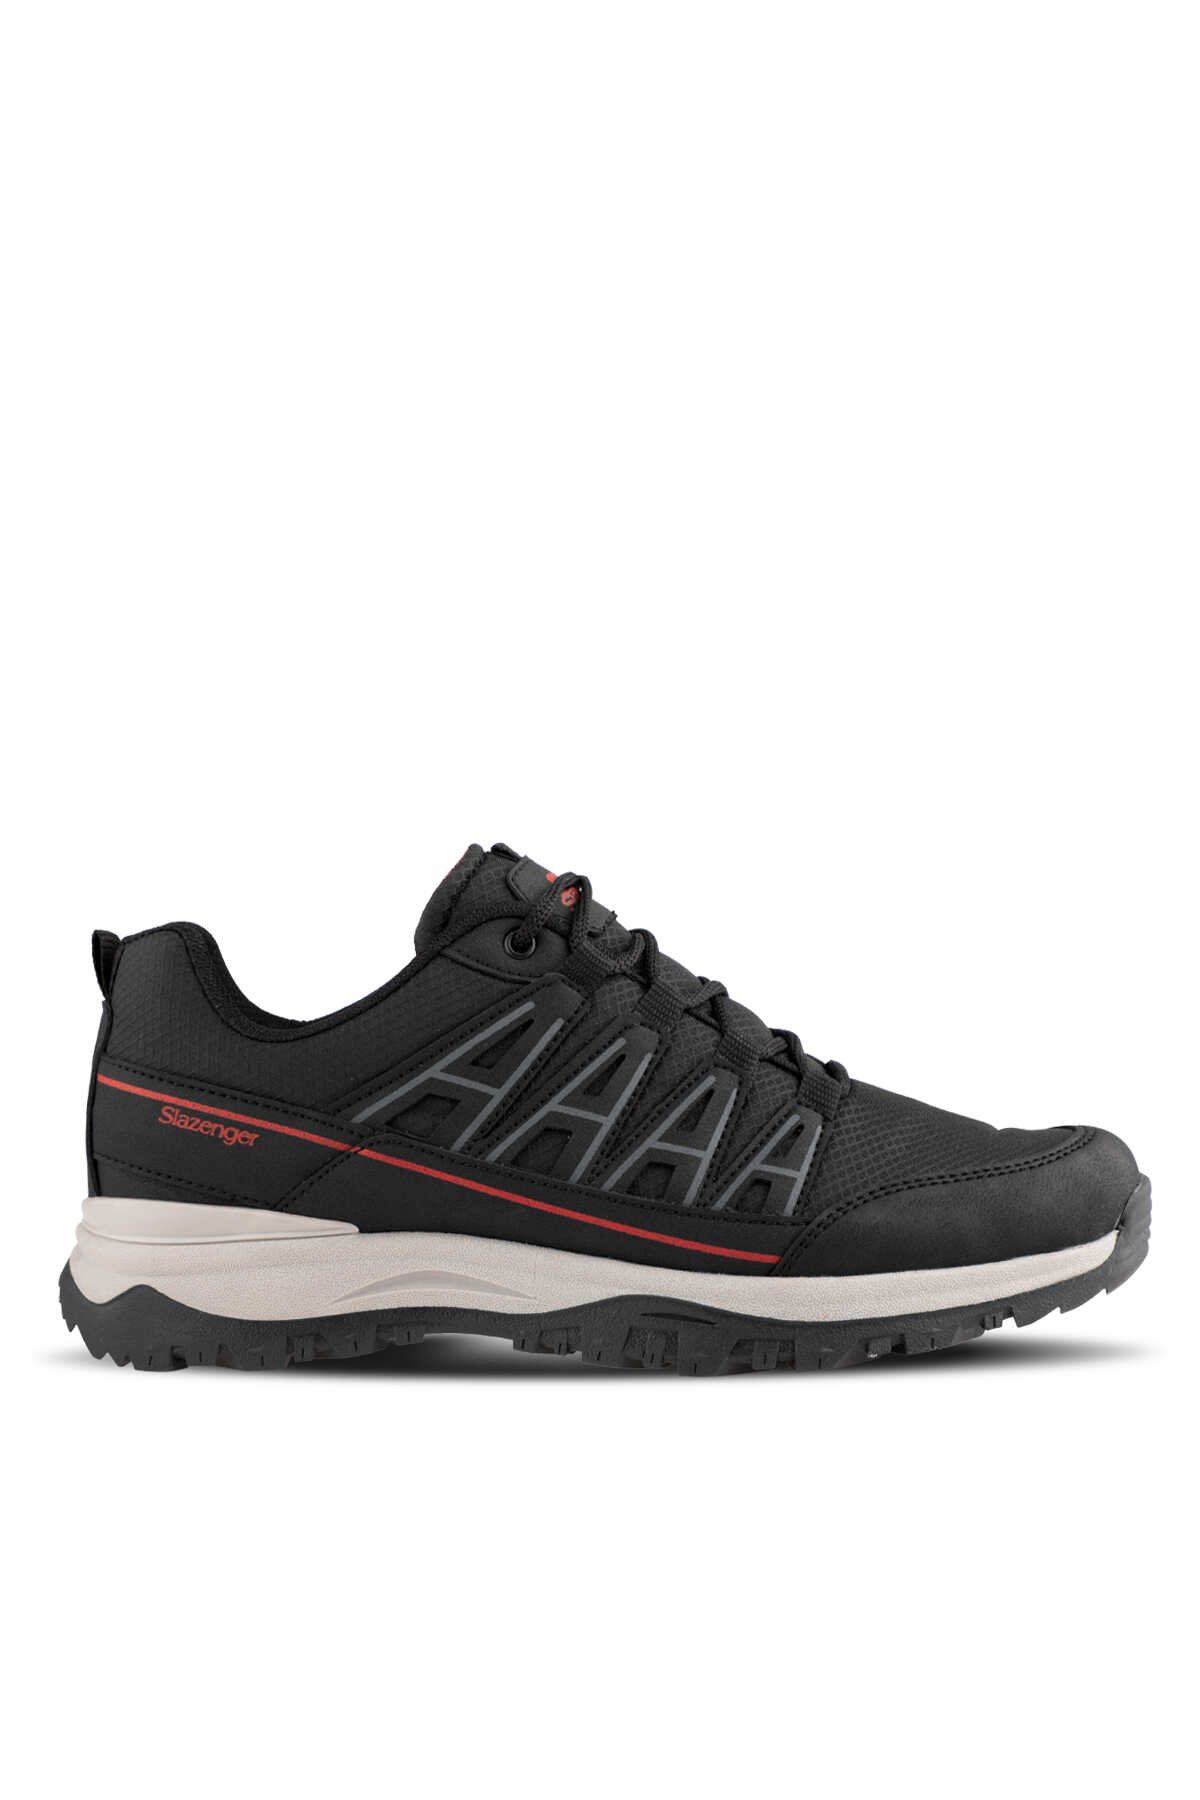 Slazenger - KIERA I Sneaker Erkek Ayakkabı Siyah / Kırmızı